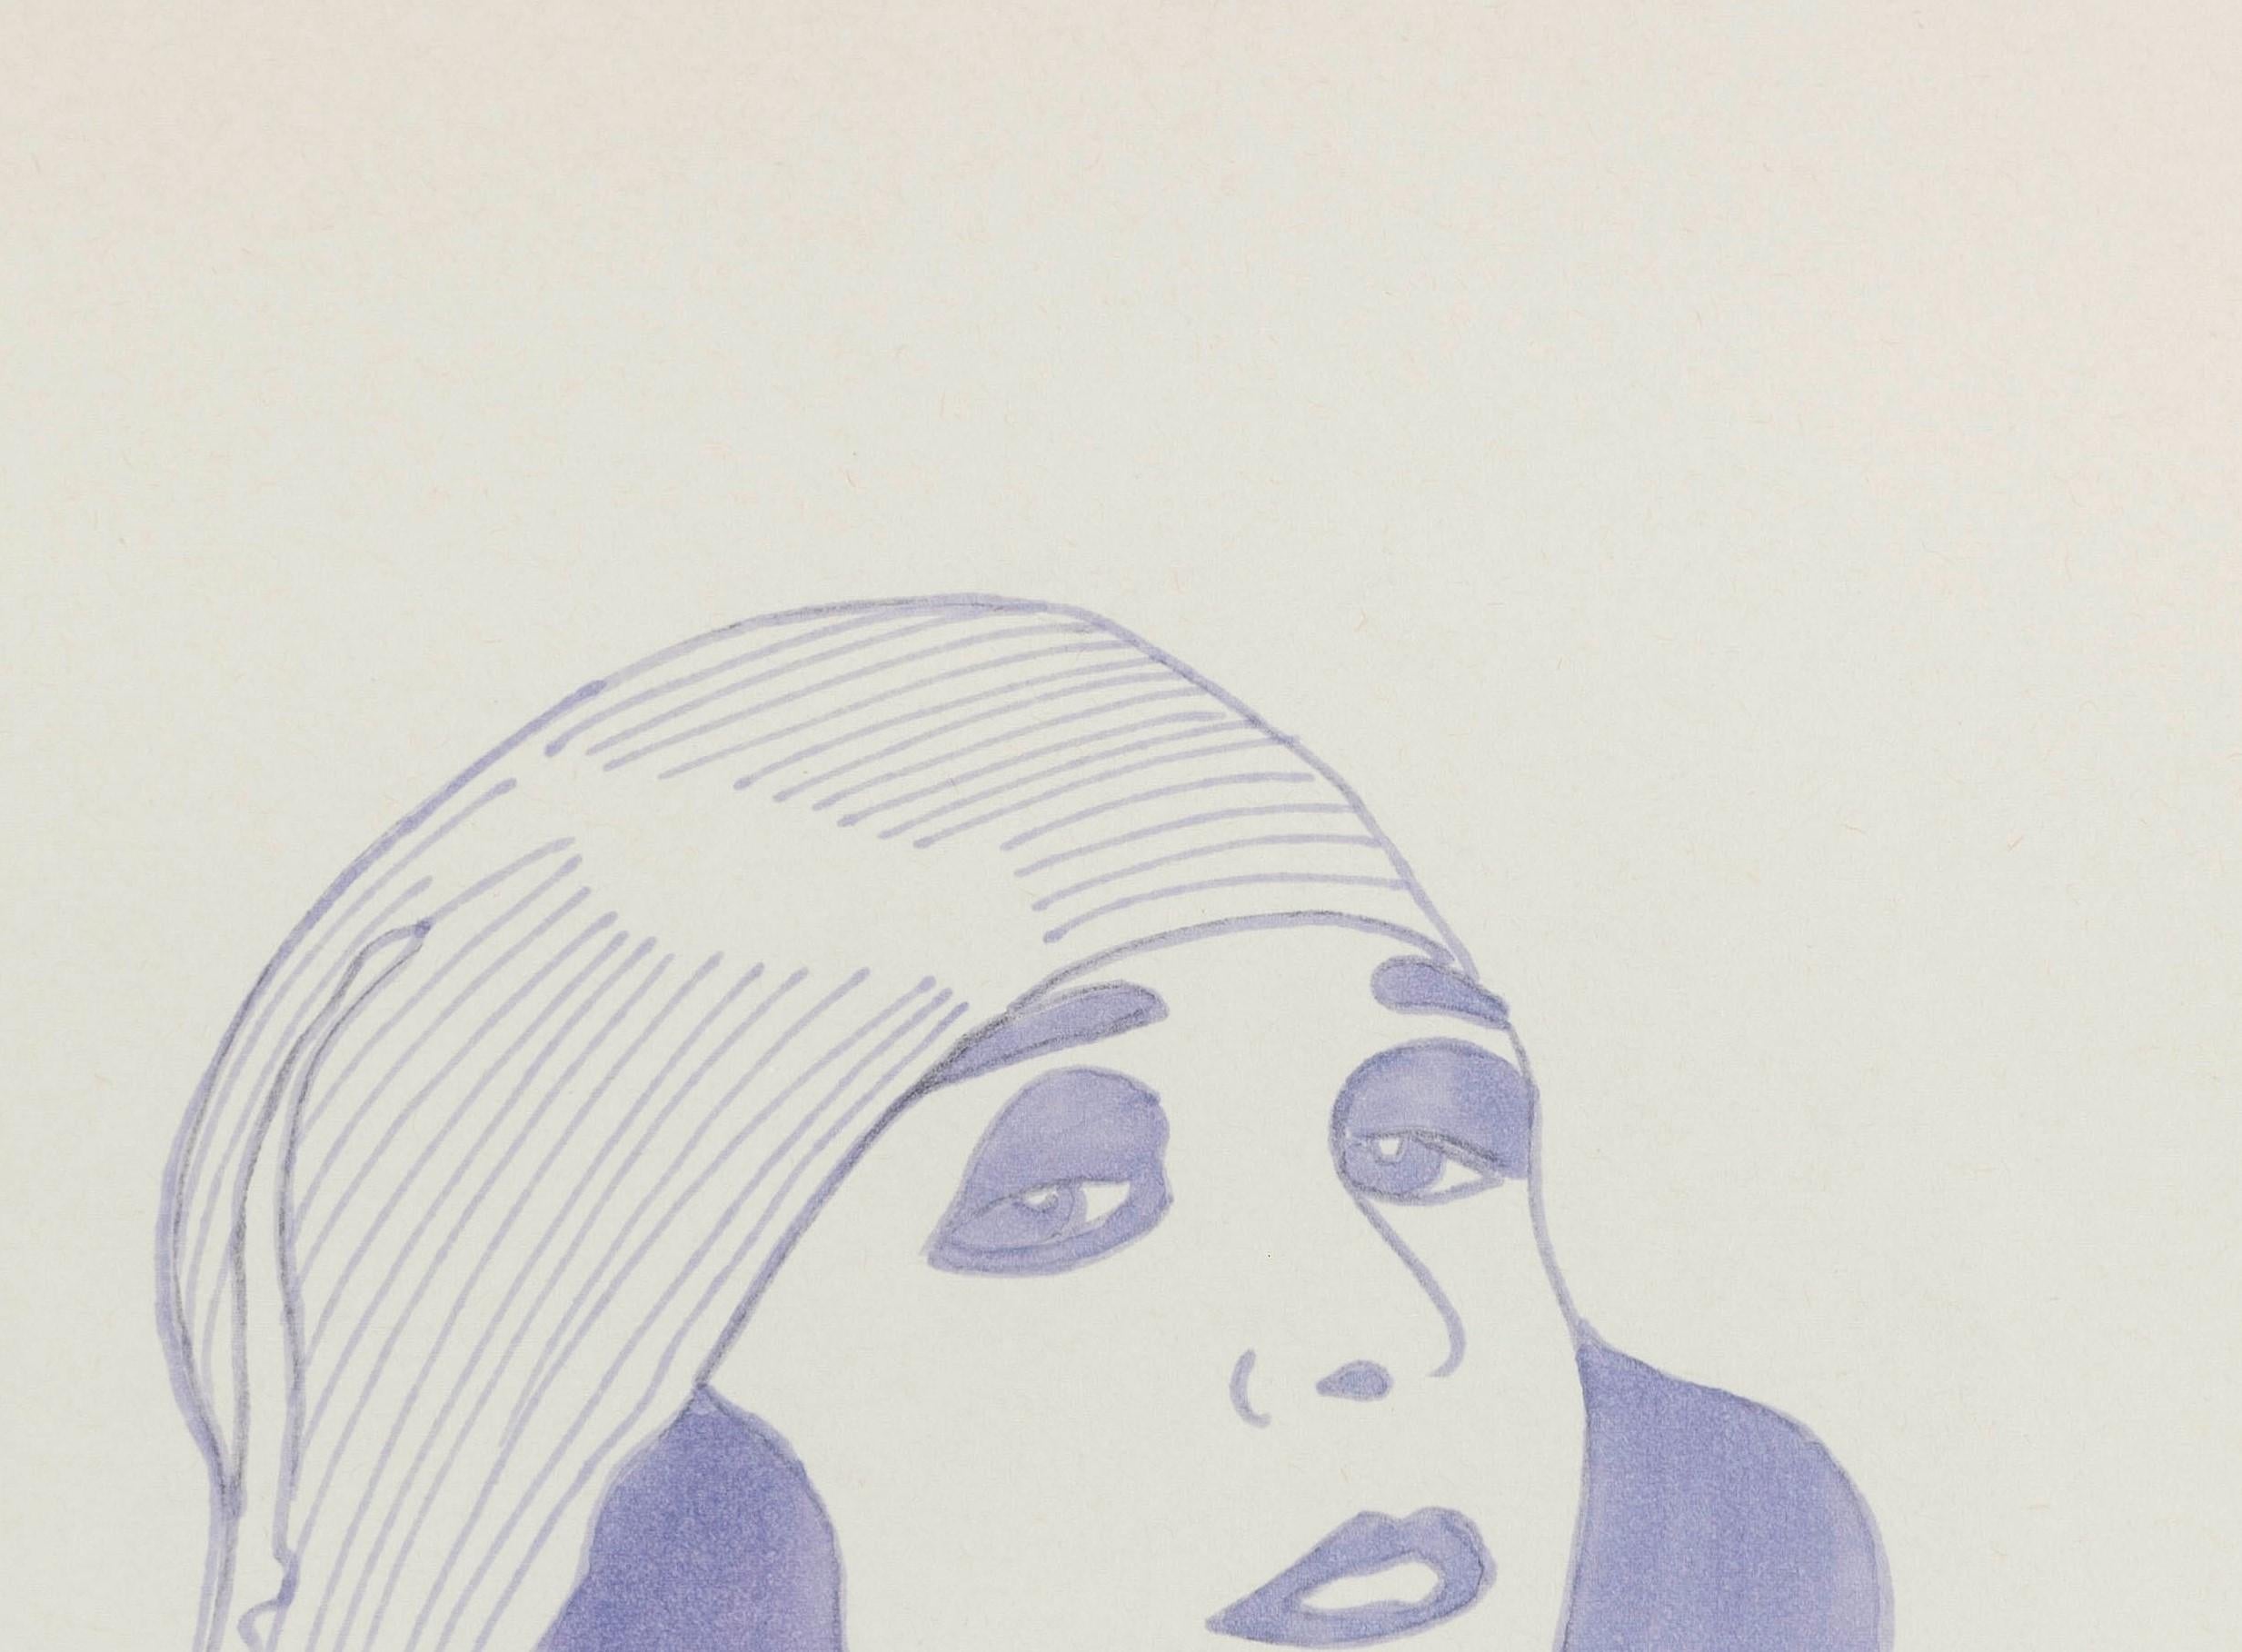 Pola Negri III. Dessins de la série Dis-enchanted. - Gris Figurative Art par Paloma Castello